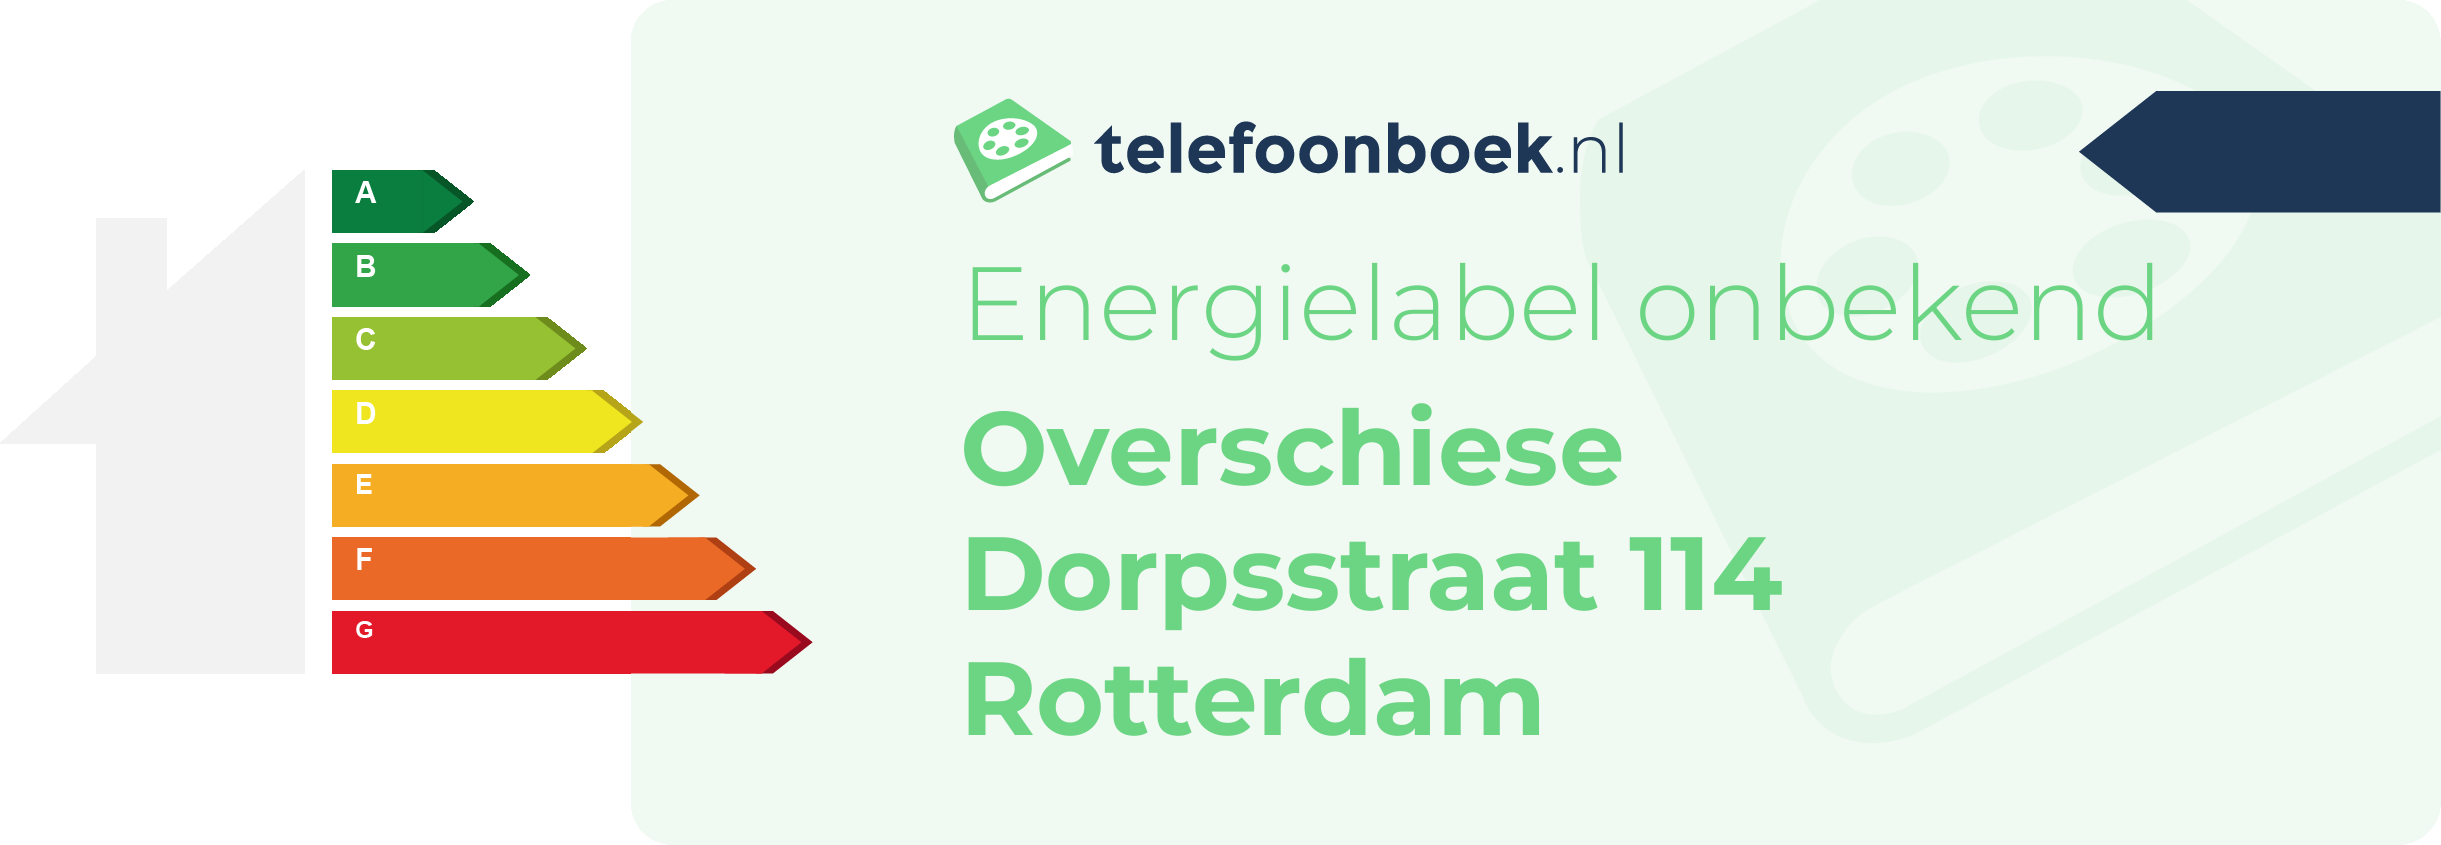 Energielabel Overschiese Dorpsstraat 114 Rotterdam